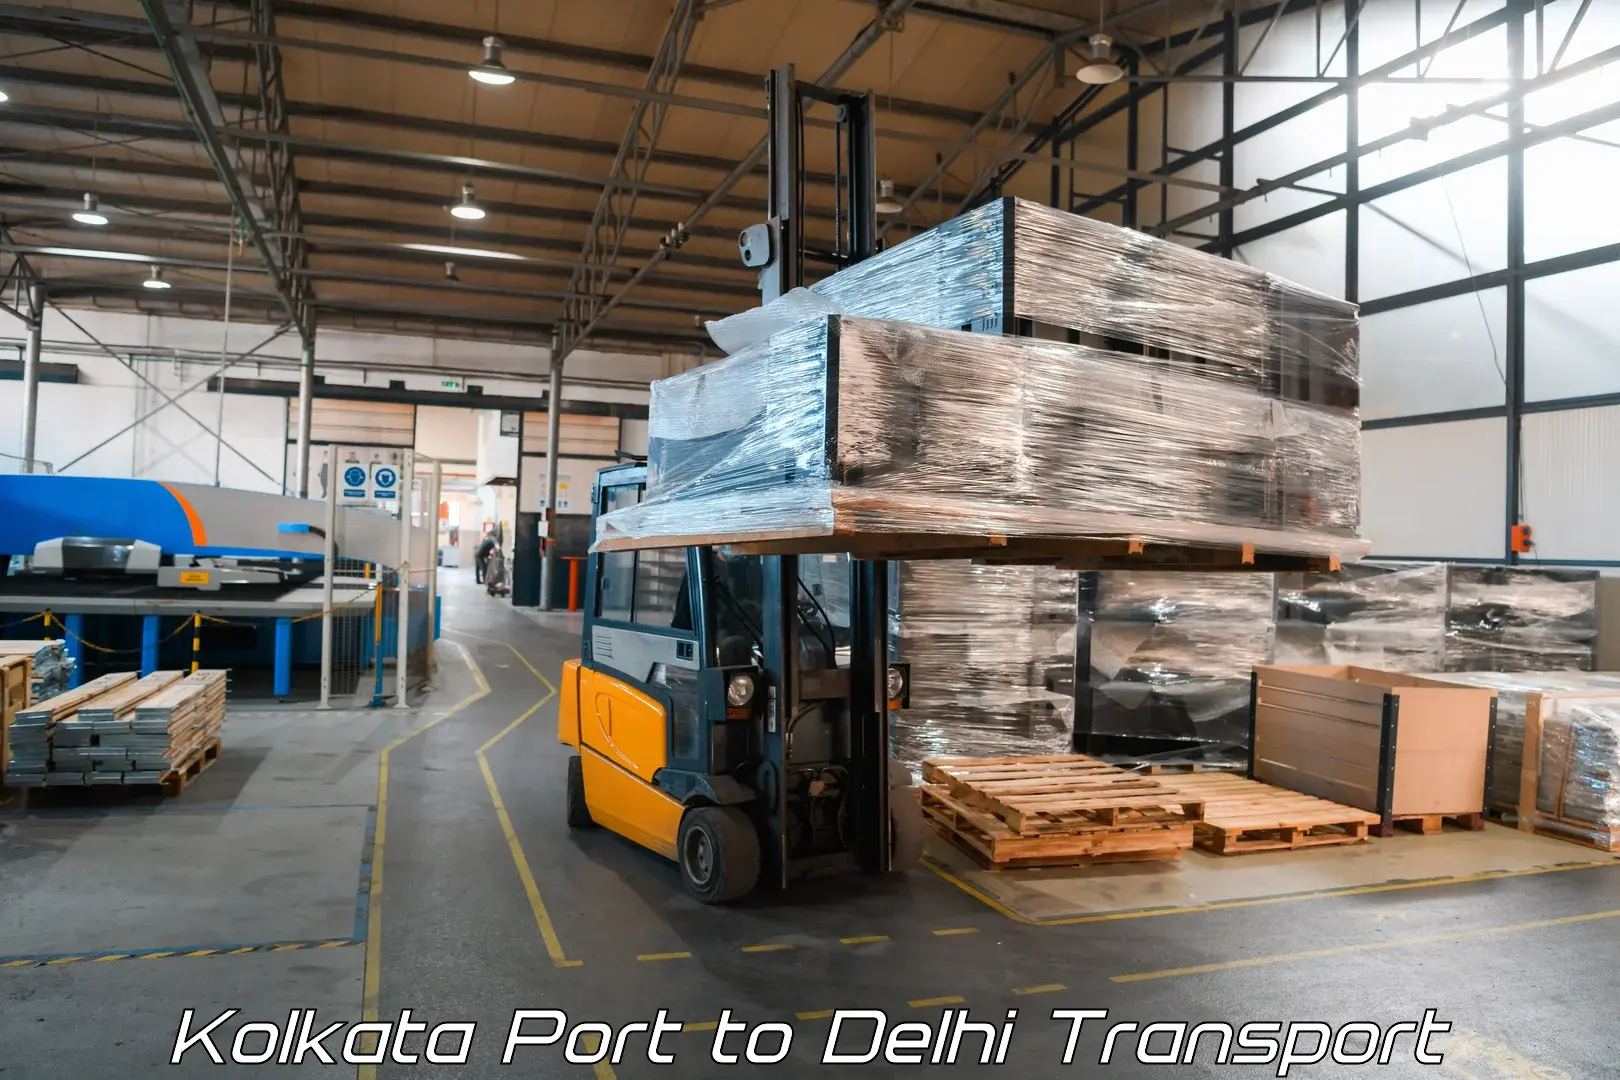 Intercity transport Kolkata Port to Kalkaji